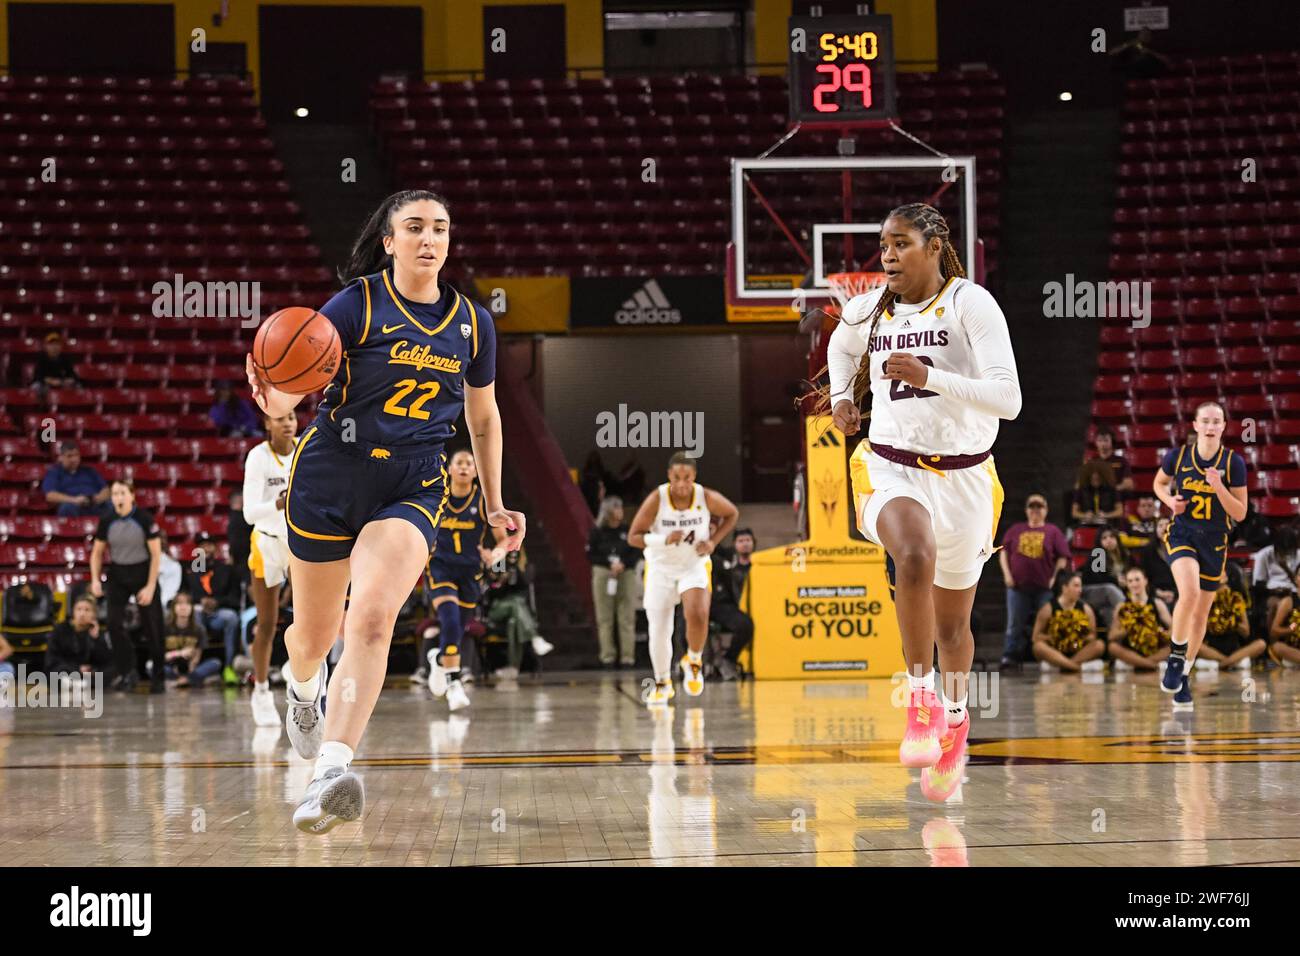 Claudia Langarita (22) fährt in der zweiten Hälfte des NCAA-Basketballspiels gegen Arizona State i in Richtung Korb Stockfoto